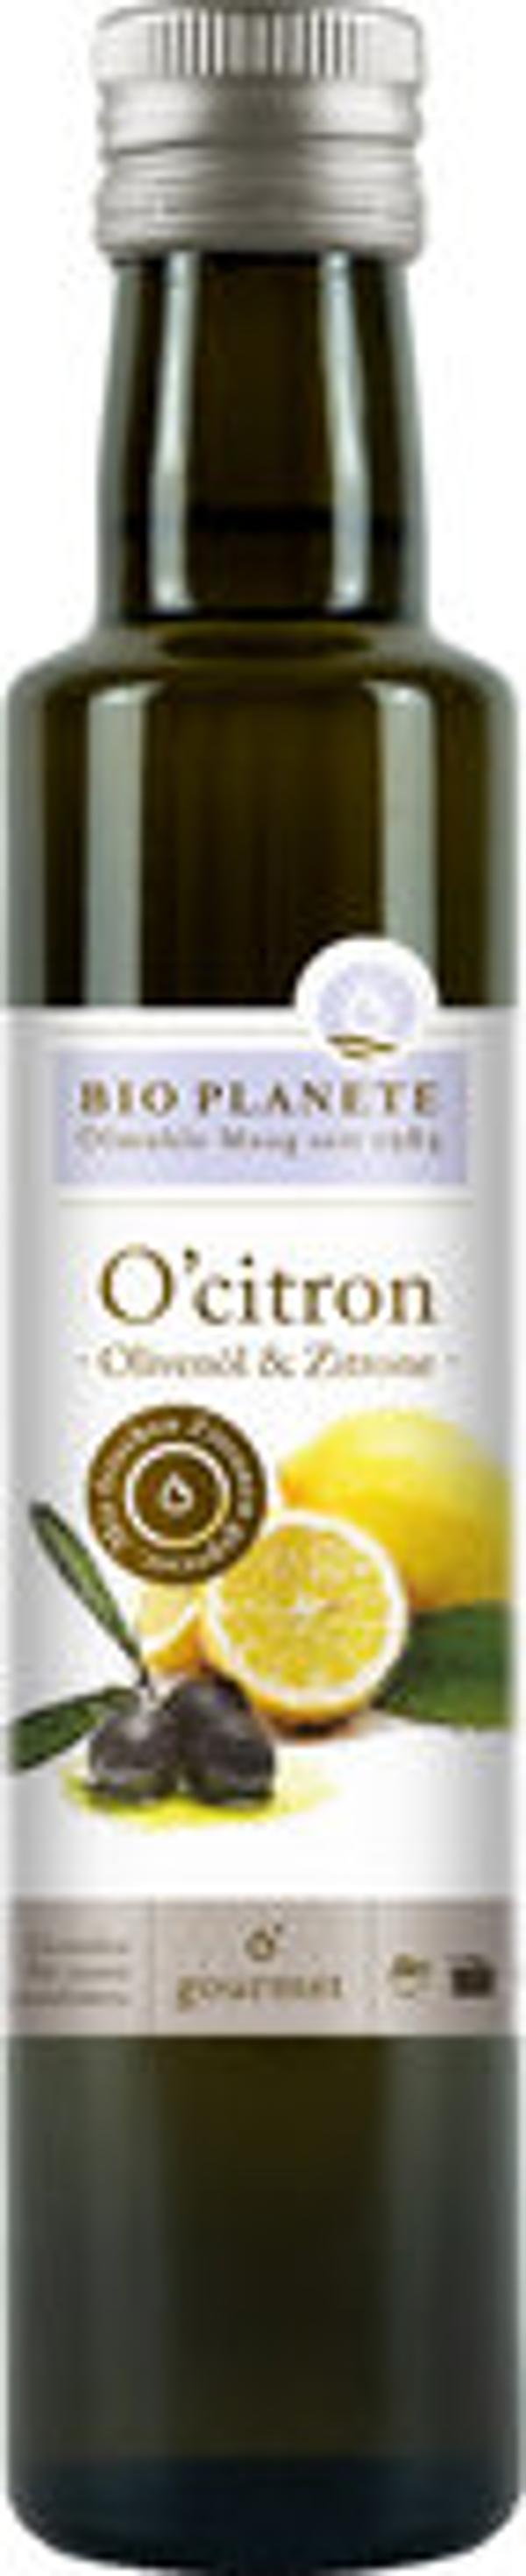 Produktbild von Bio Planète Olivenöl Zitrone 250ml